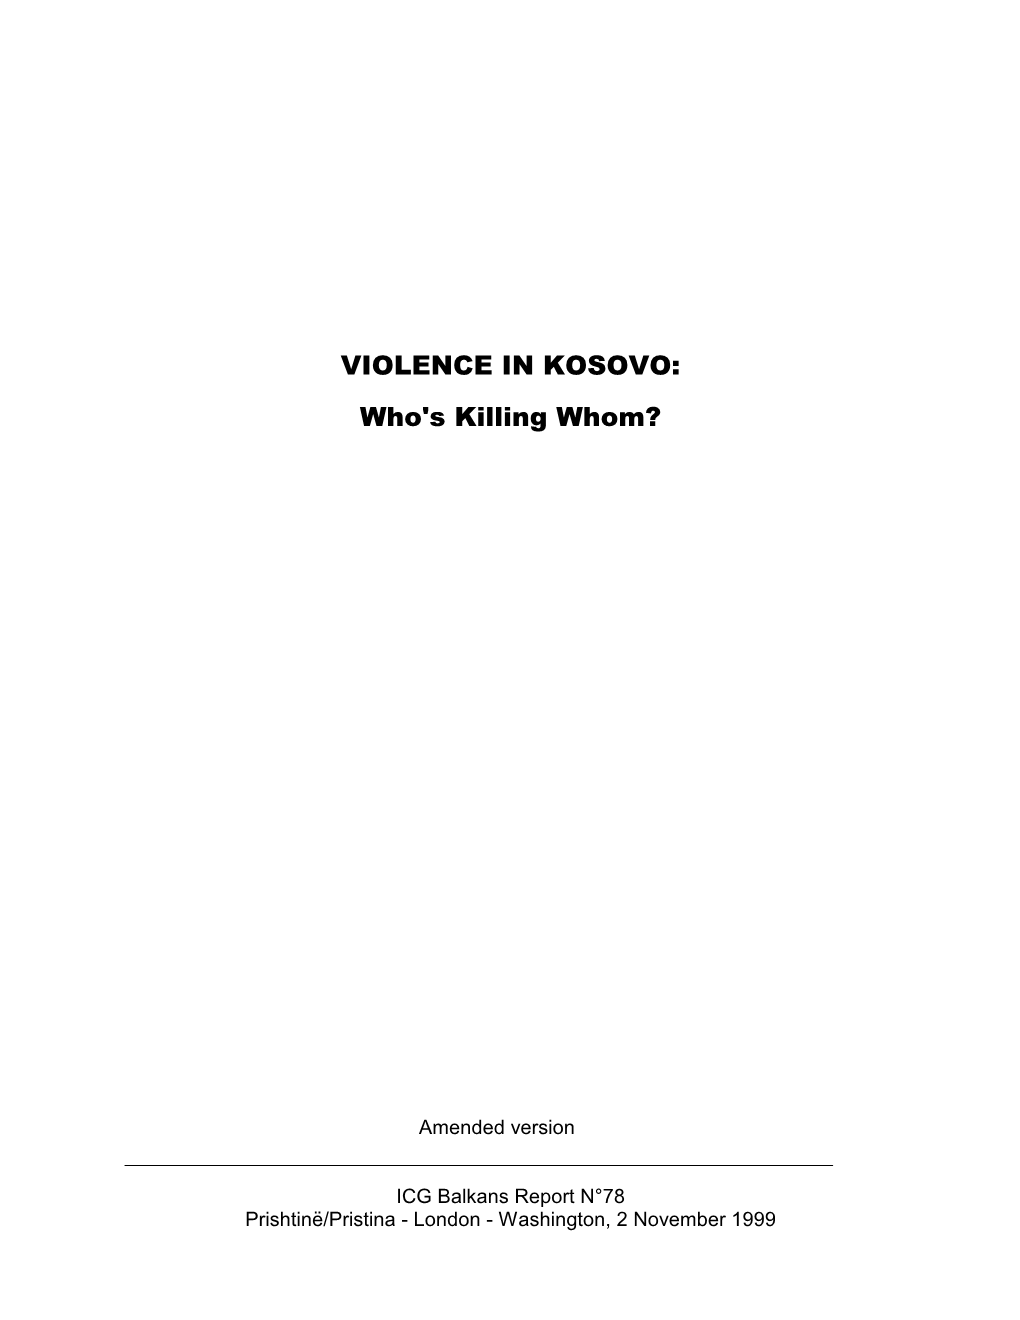 Violence in Kosovo